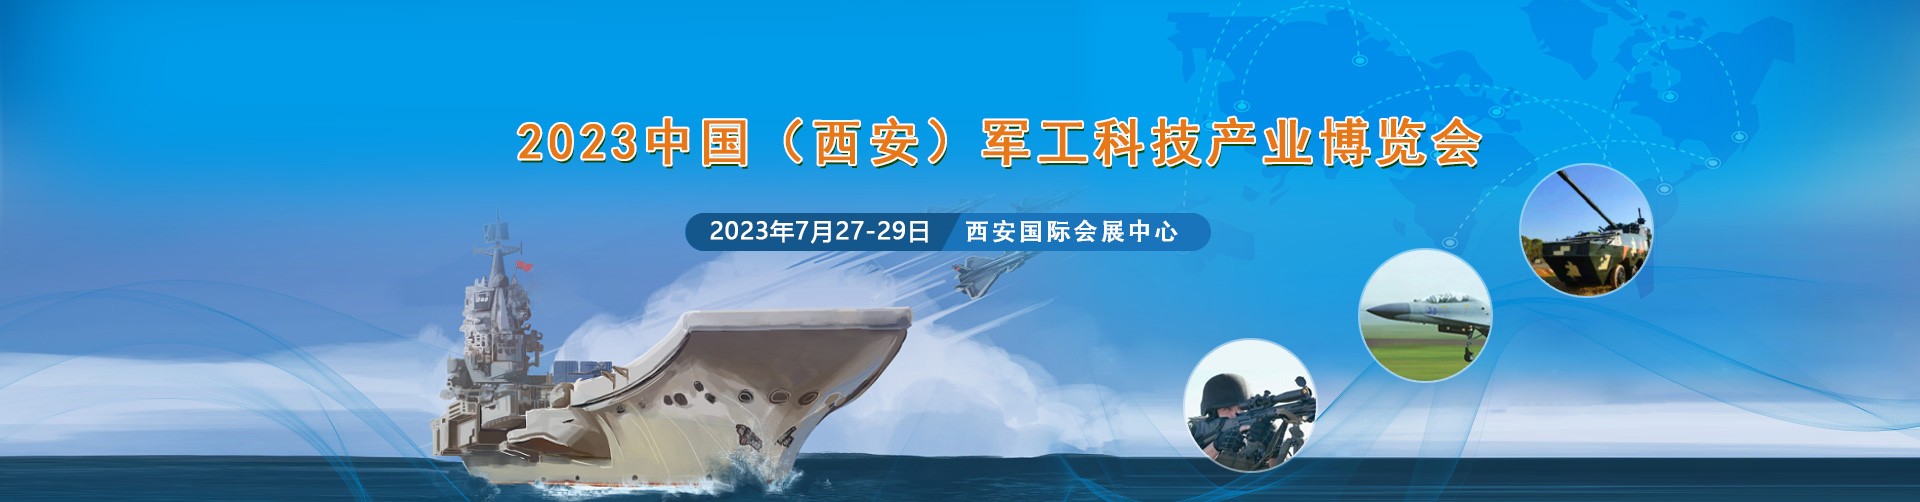  雨菲电子参加中国(西安) 军工科技产业博览会